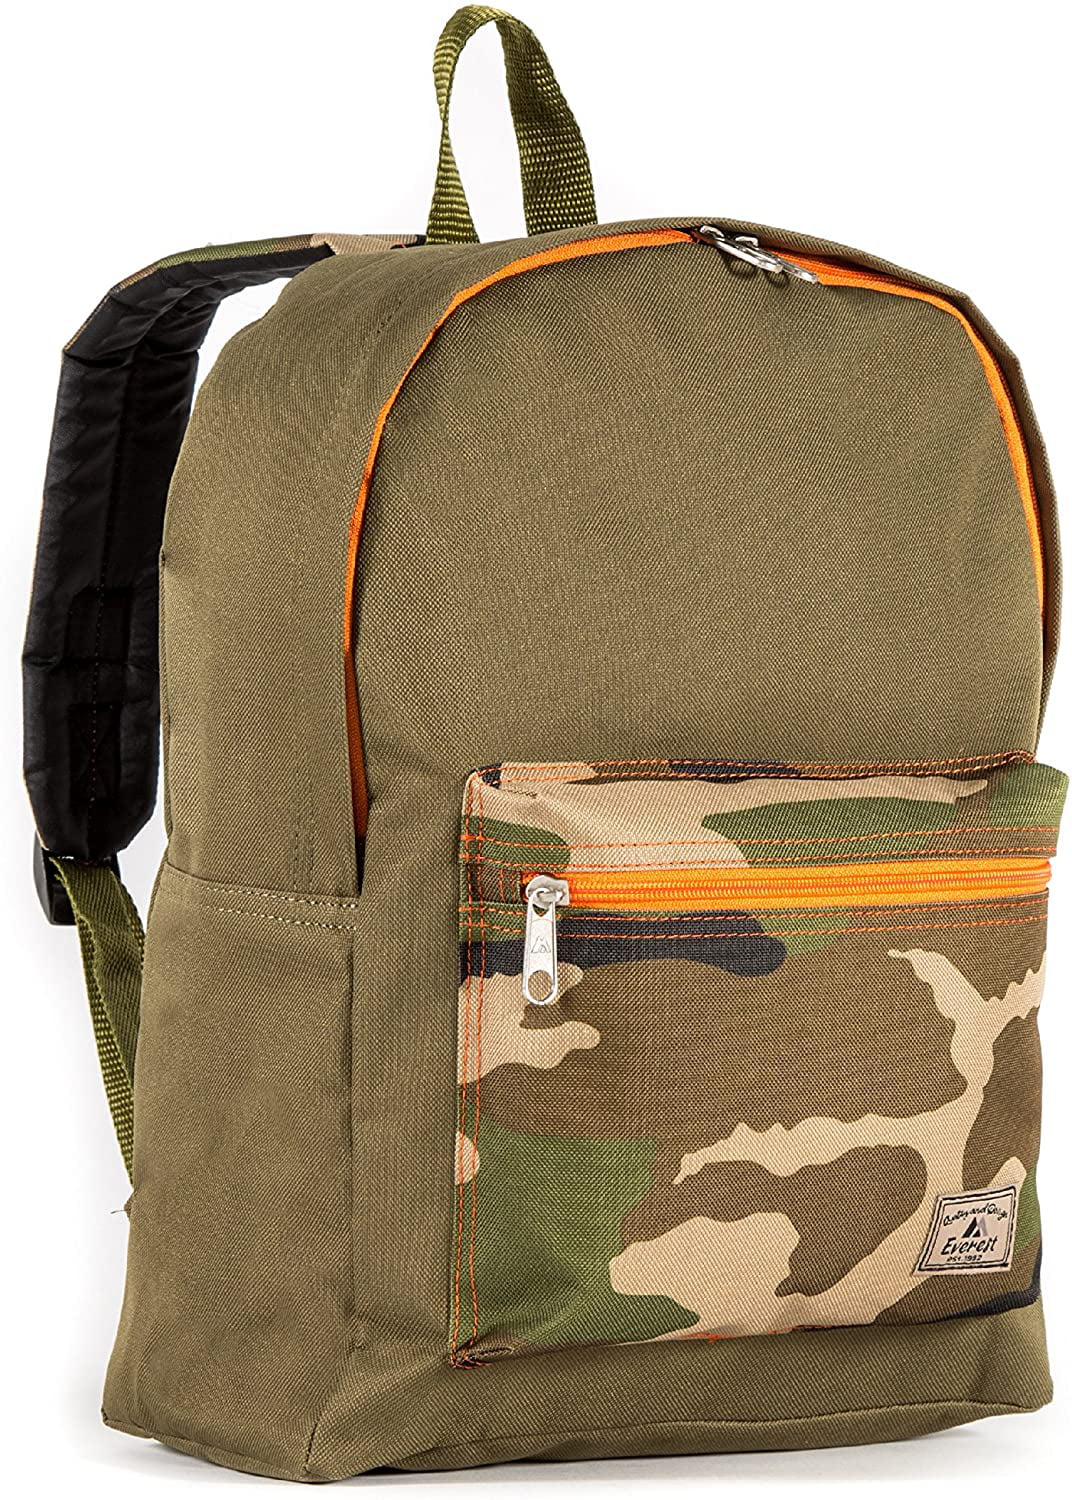 Everest Basic Color Block Backpack, Olive/Camo, One Size - Walmart.com